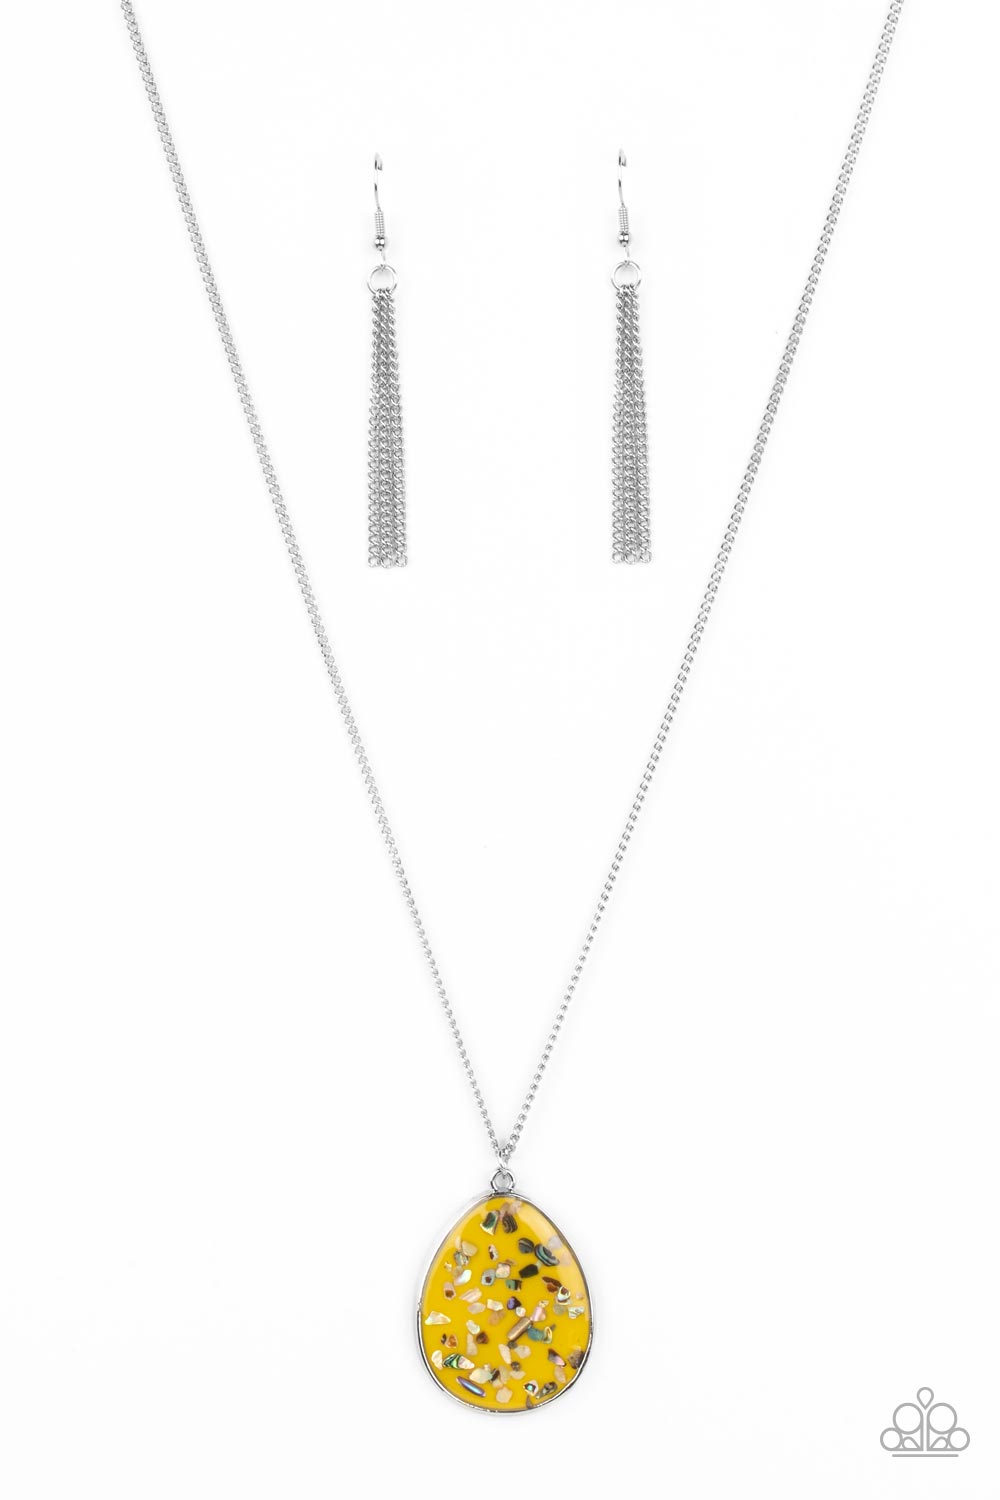 Paparazzi Jewelry Urban Circus - Yellow Necklace Bling By Jessiek – Bling  by JessieK